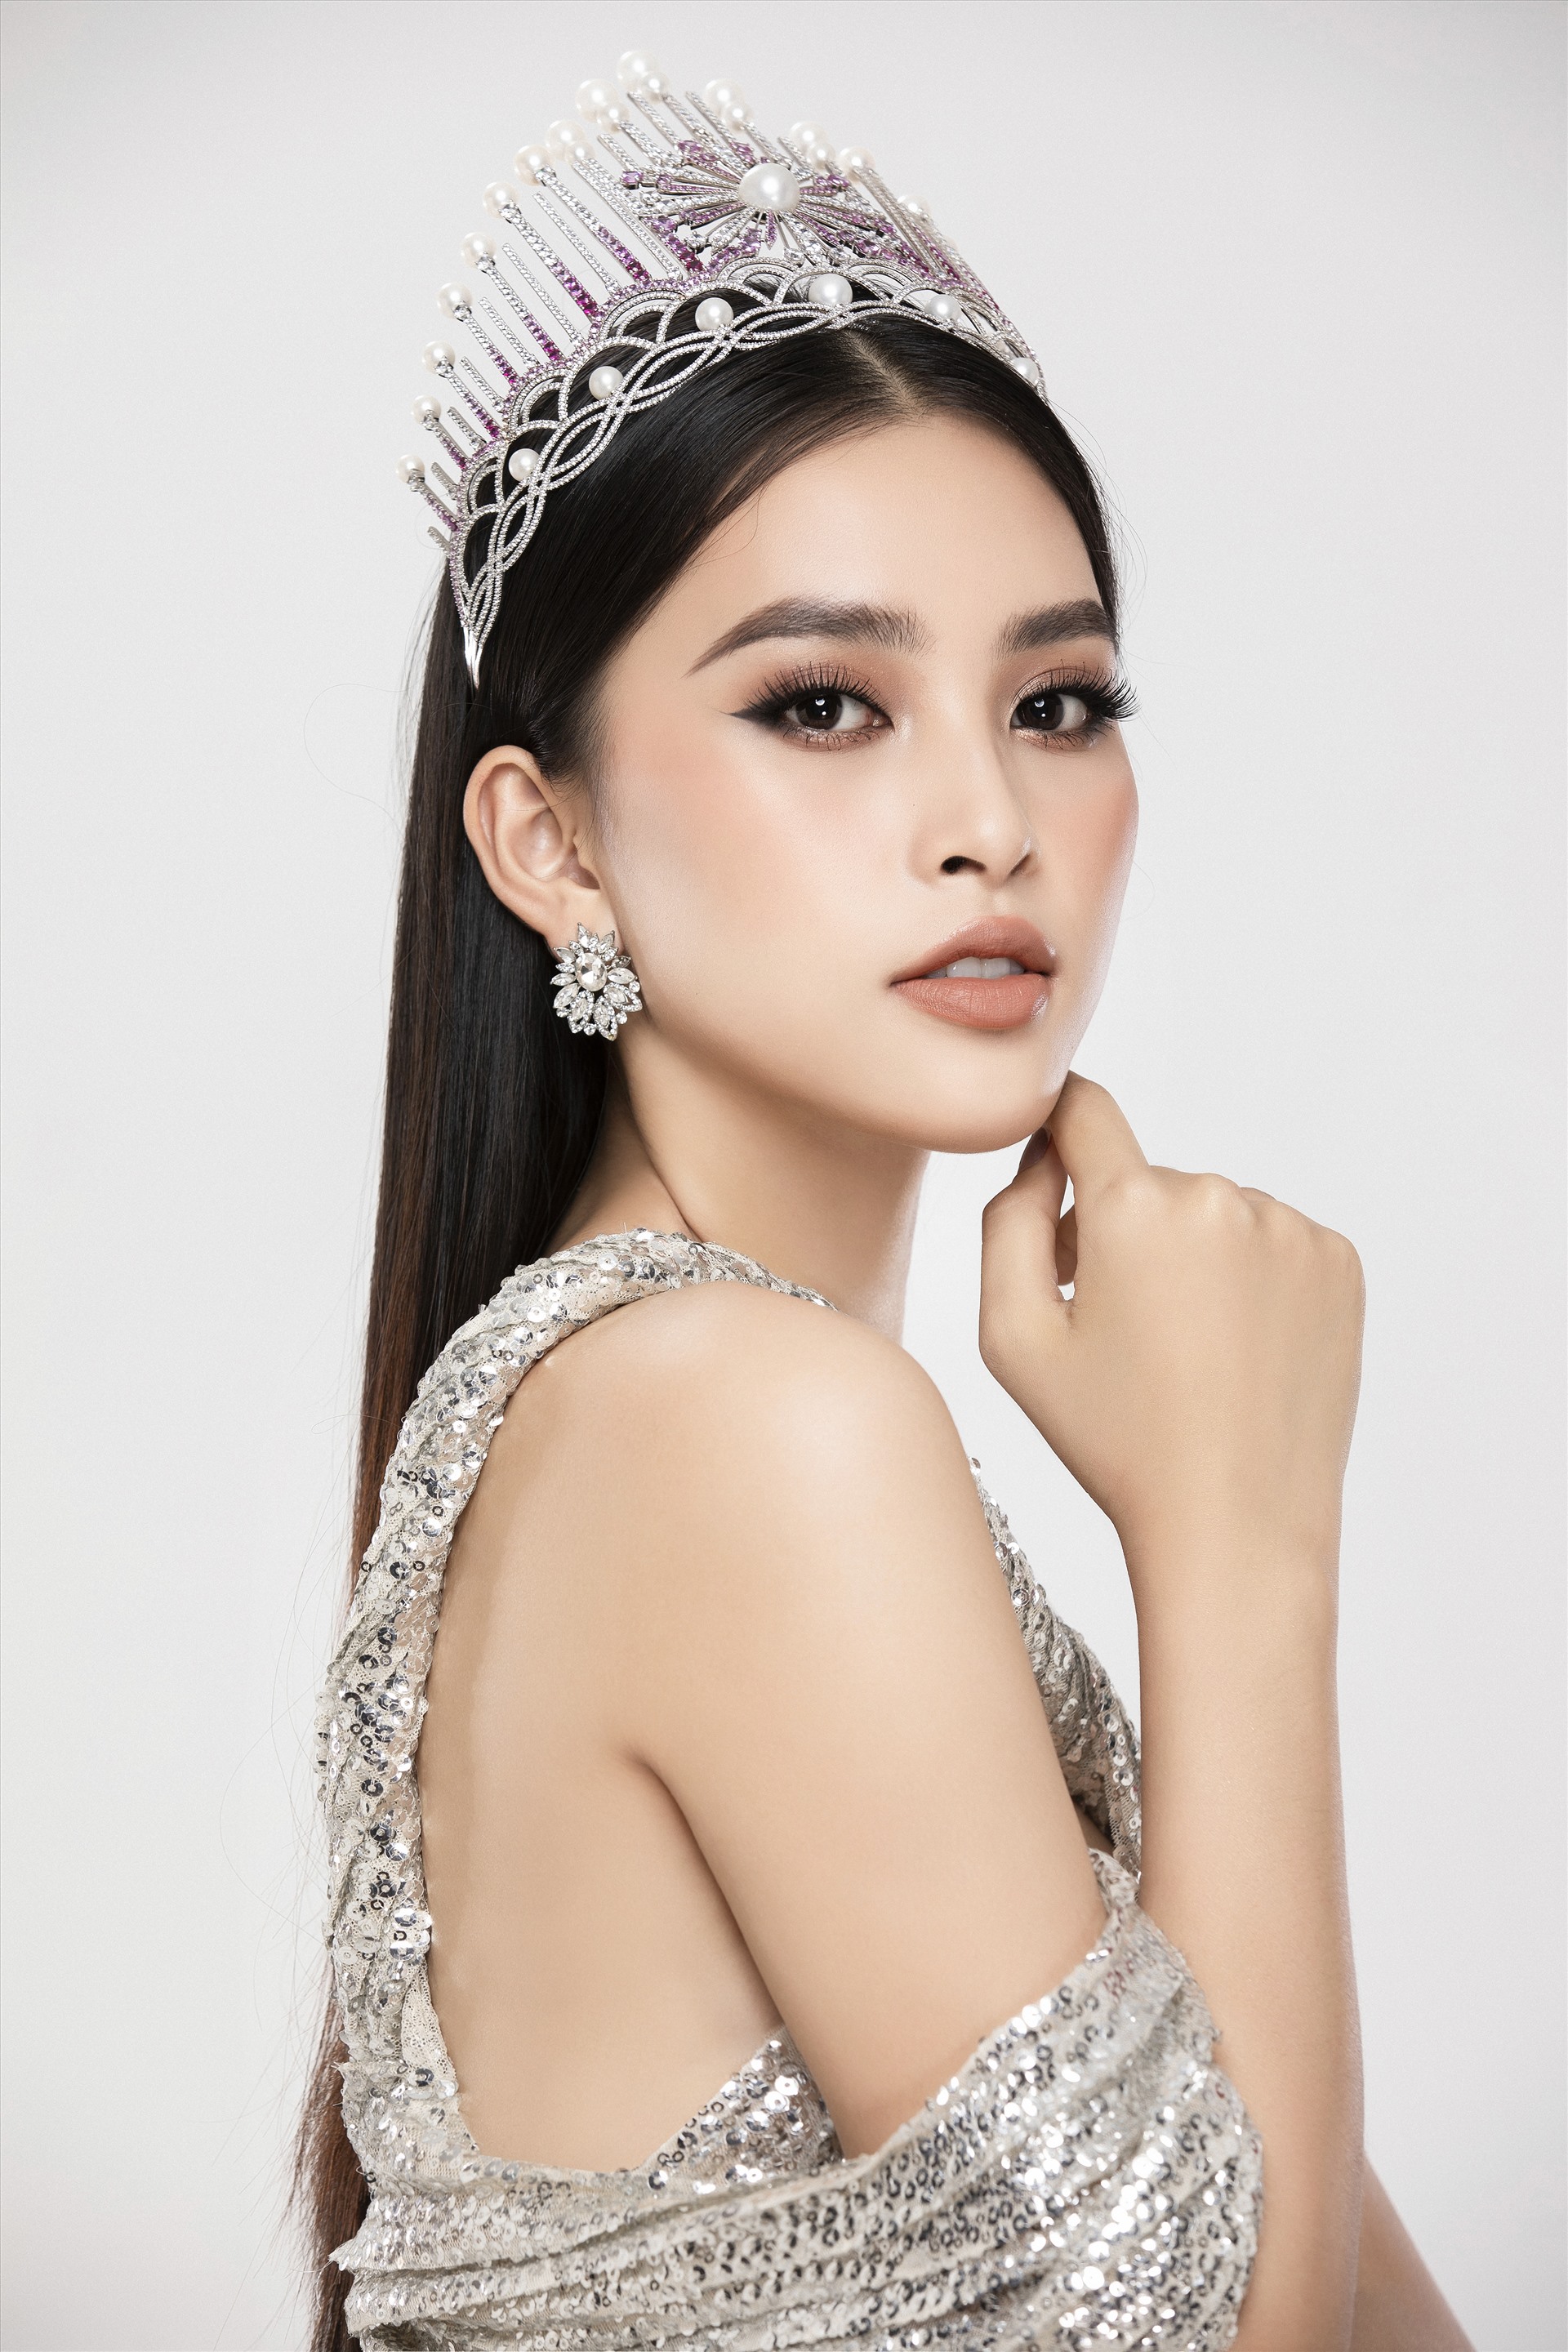 Cả ba đã tham gia và đại diện xứng đáng cho các cô gái Việt Nam tại các cuộc thi sắc đẹp có uy tín trên thế giới, trong đó Hoa hậu Trần Tiểu Vy lọt vào Top 5 cuộc thi Hoa hậu Nhân ái của Miss World 2018. Ảnh: Lê Thiện Viễn.